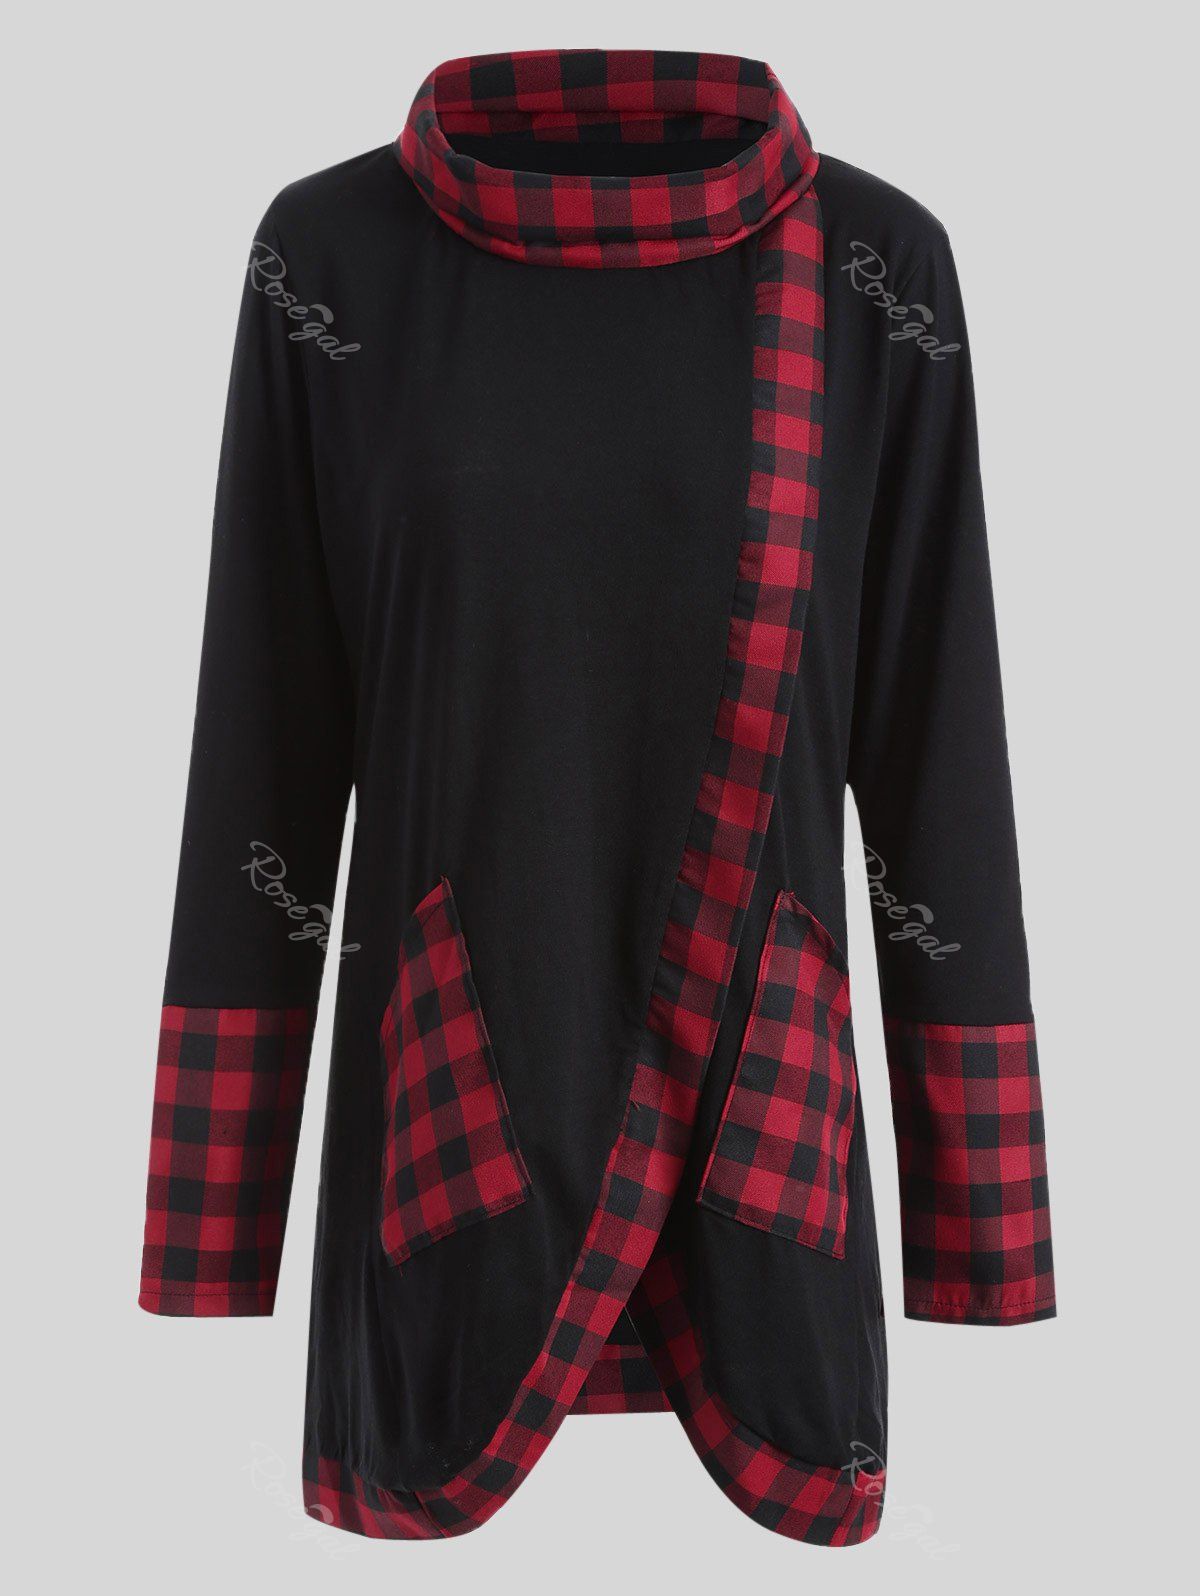 Plus-size t-shirt asymétrique à bordures à carreaux Noir et Rouge 2XL